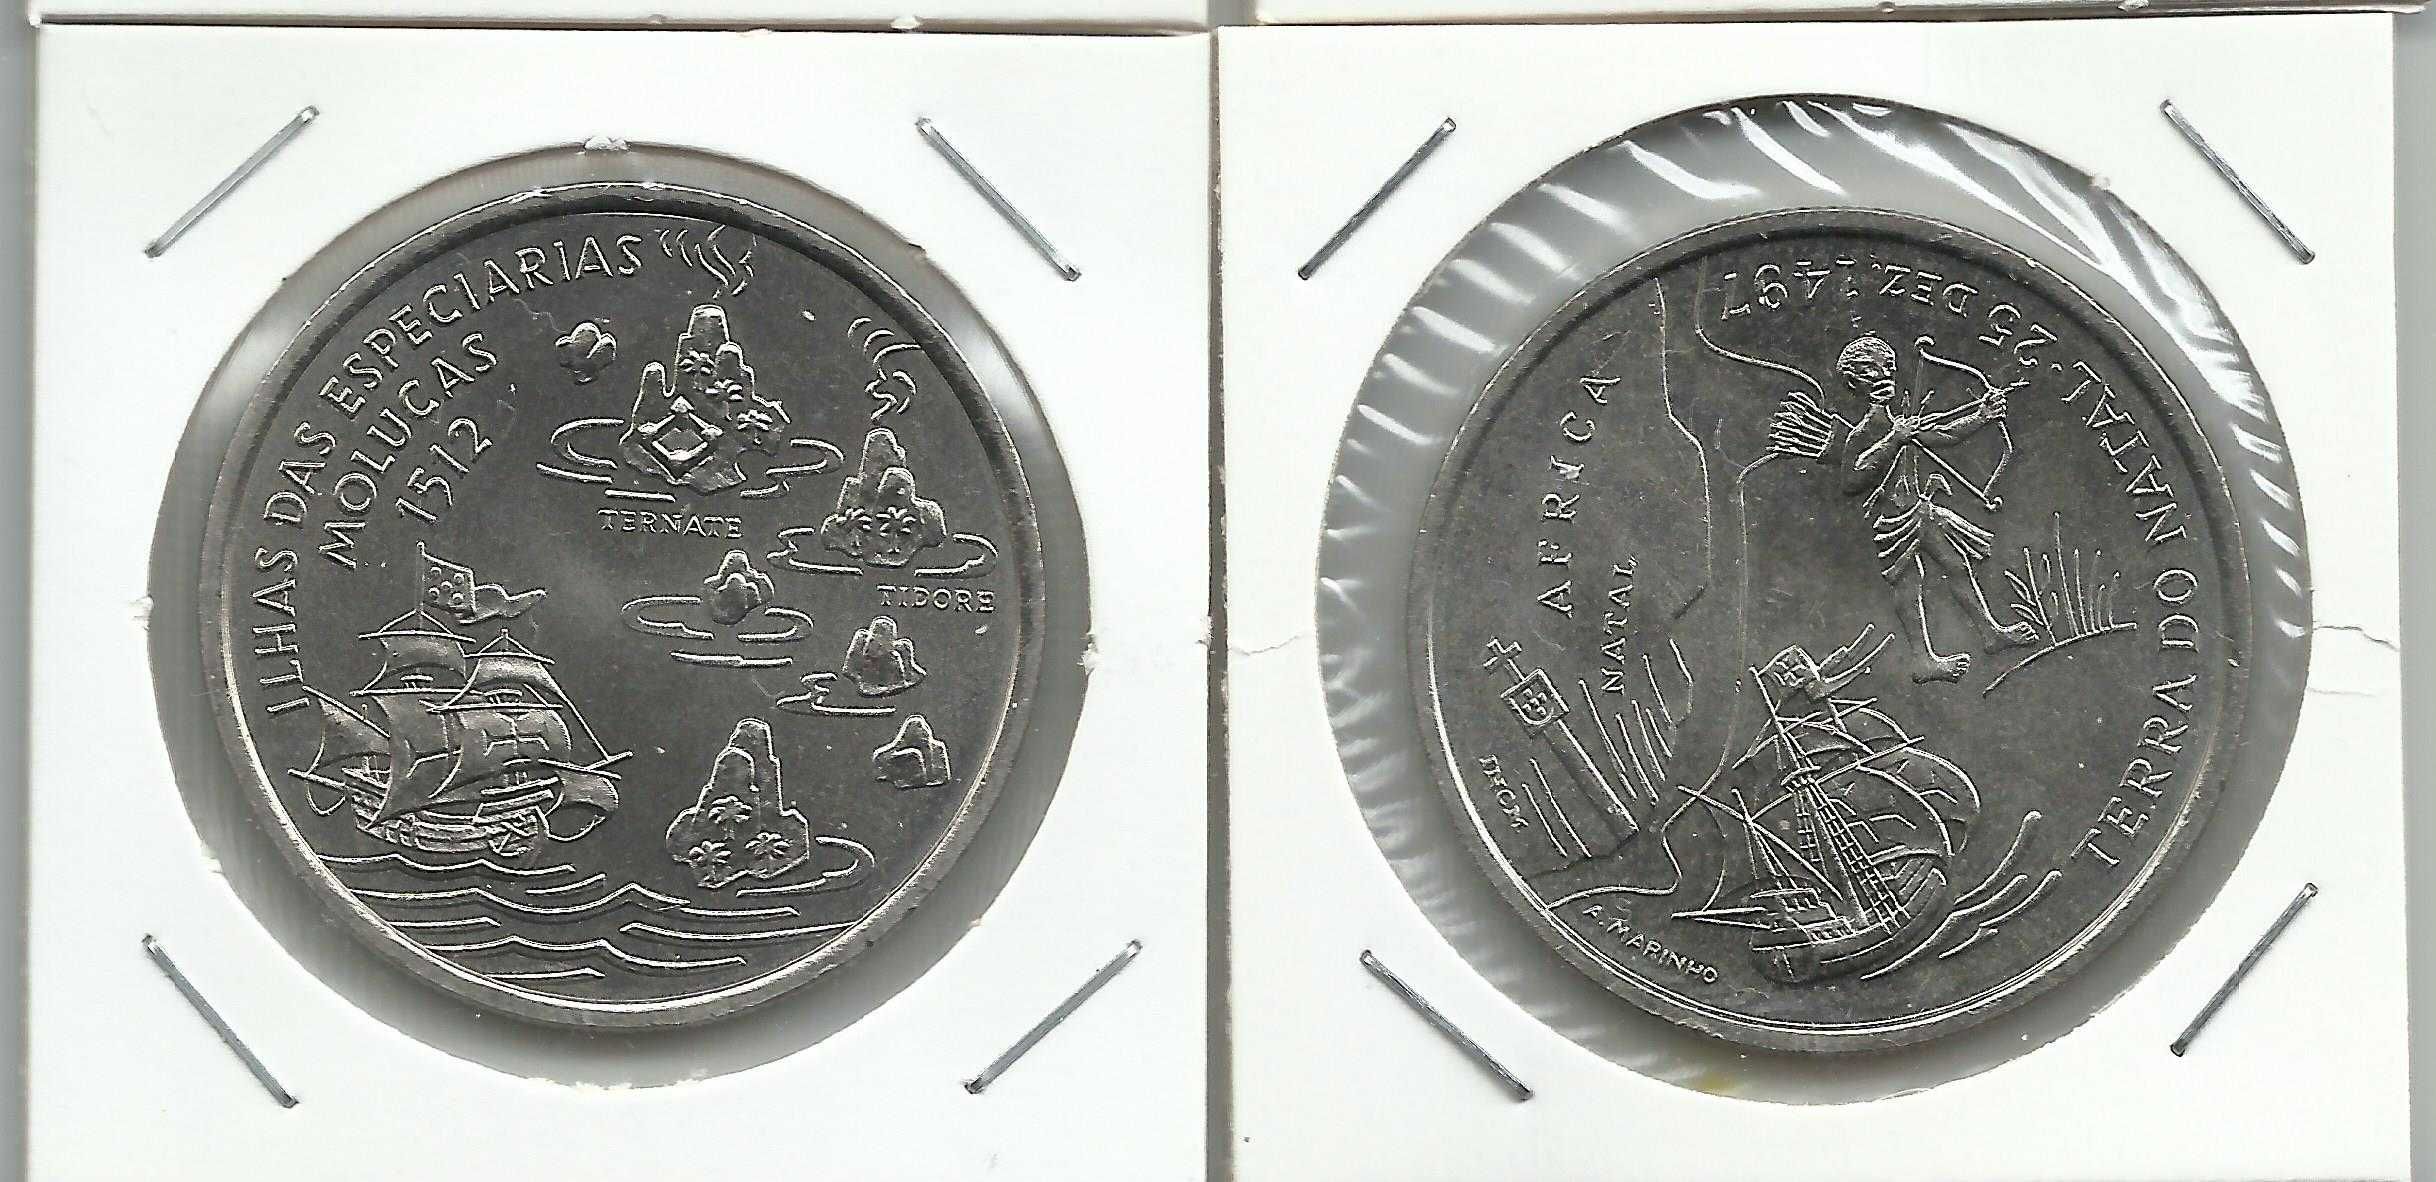 6 moedas portuguesas comemorativas de 200$00 em Cupro-Níquel